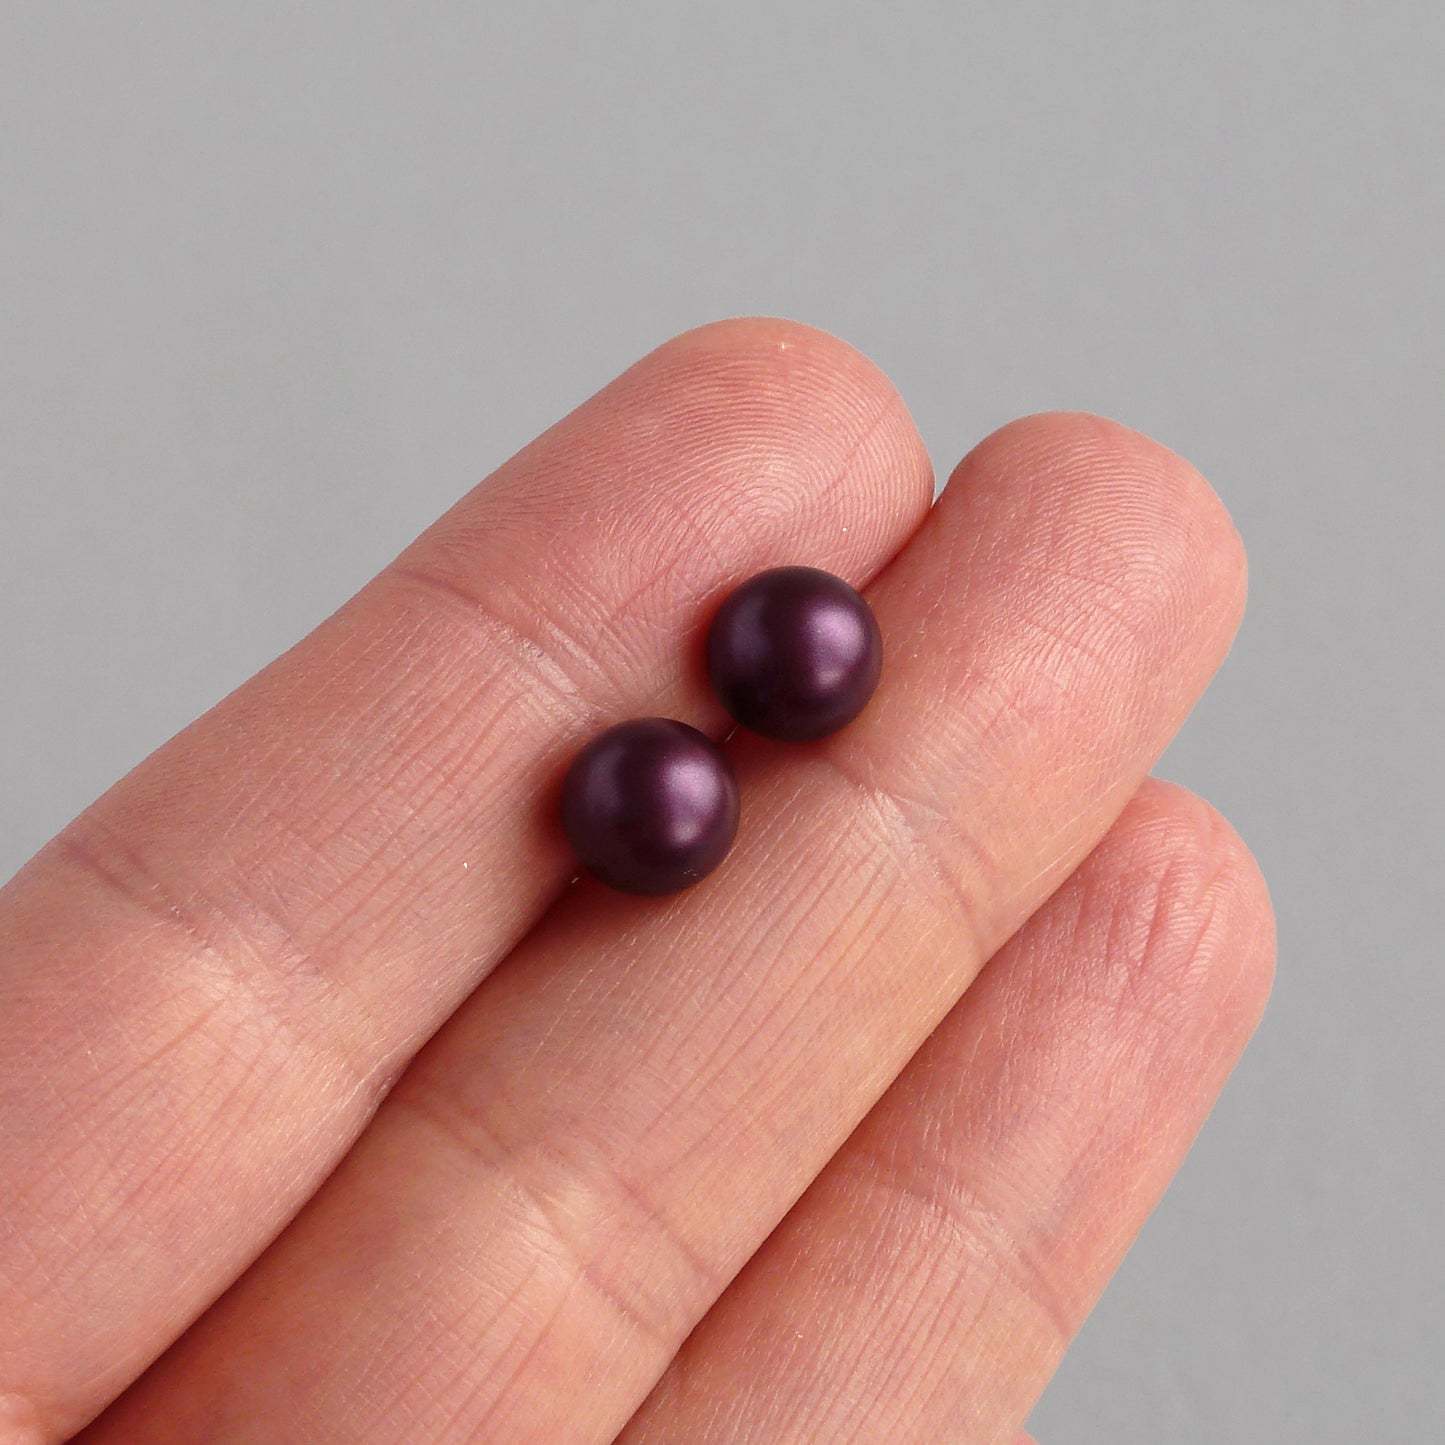 Dark purple stud earrings